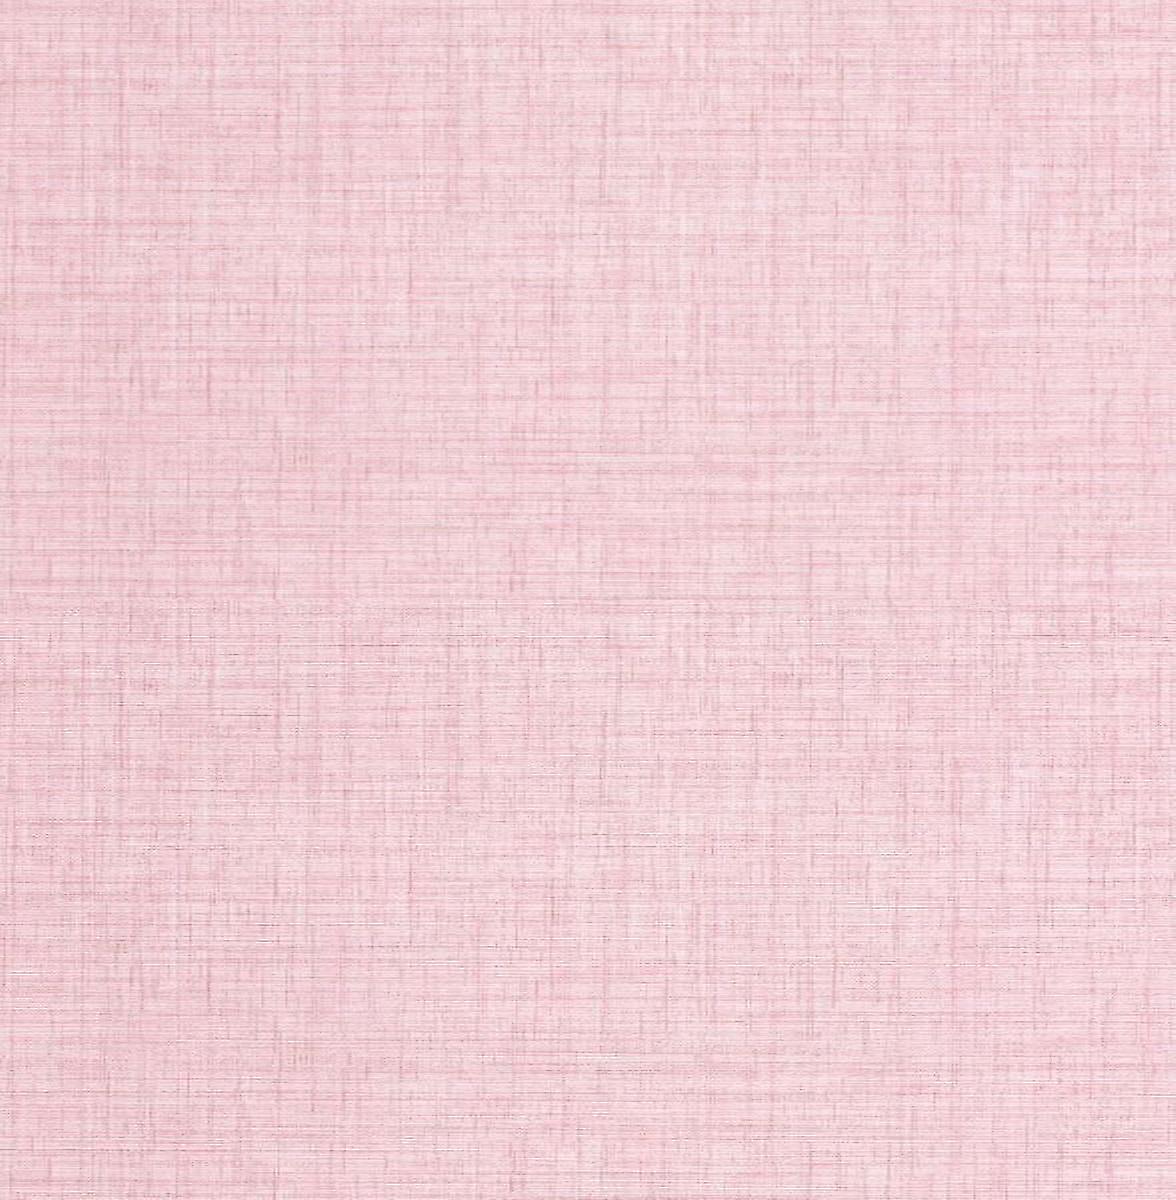 Plain Linen Texture Woven Effect Wallpaper Blush Pink - Peach - HD Wallpaper 